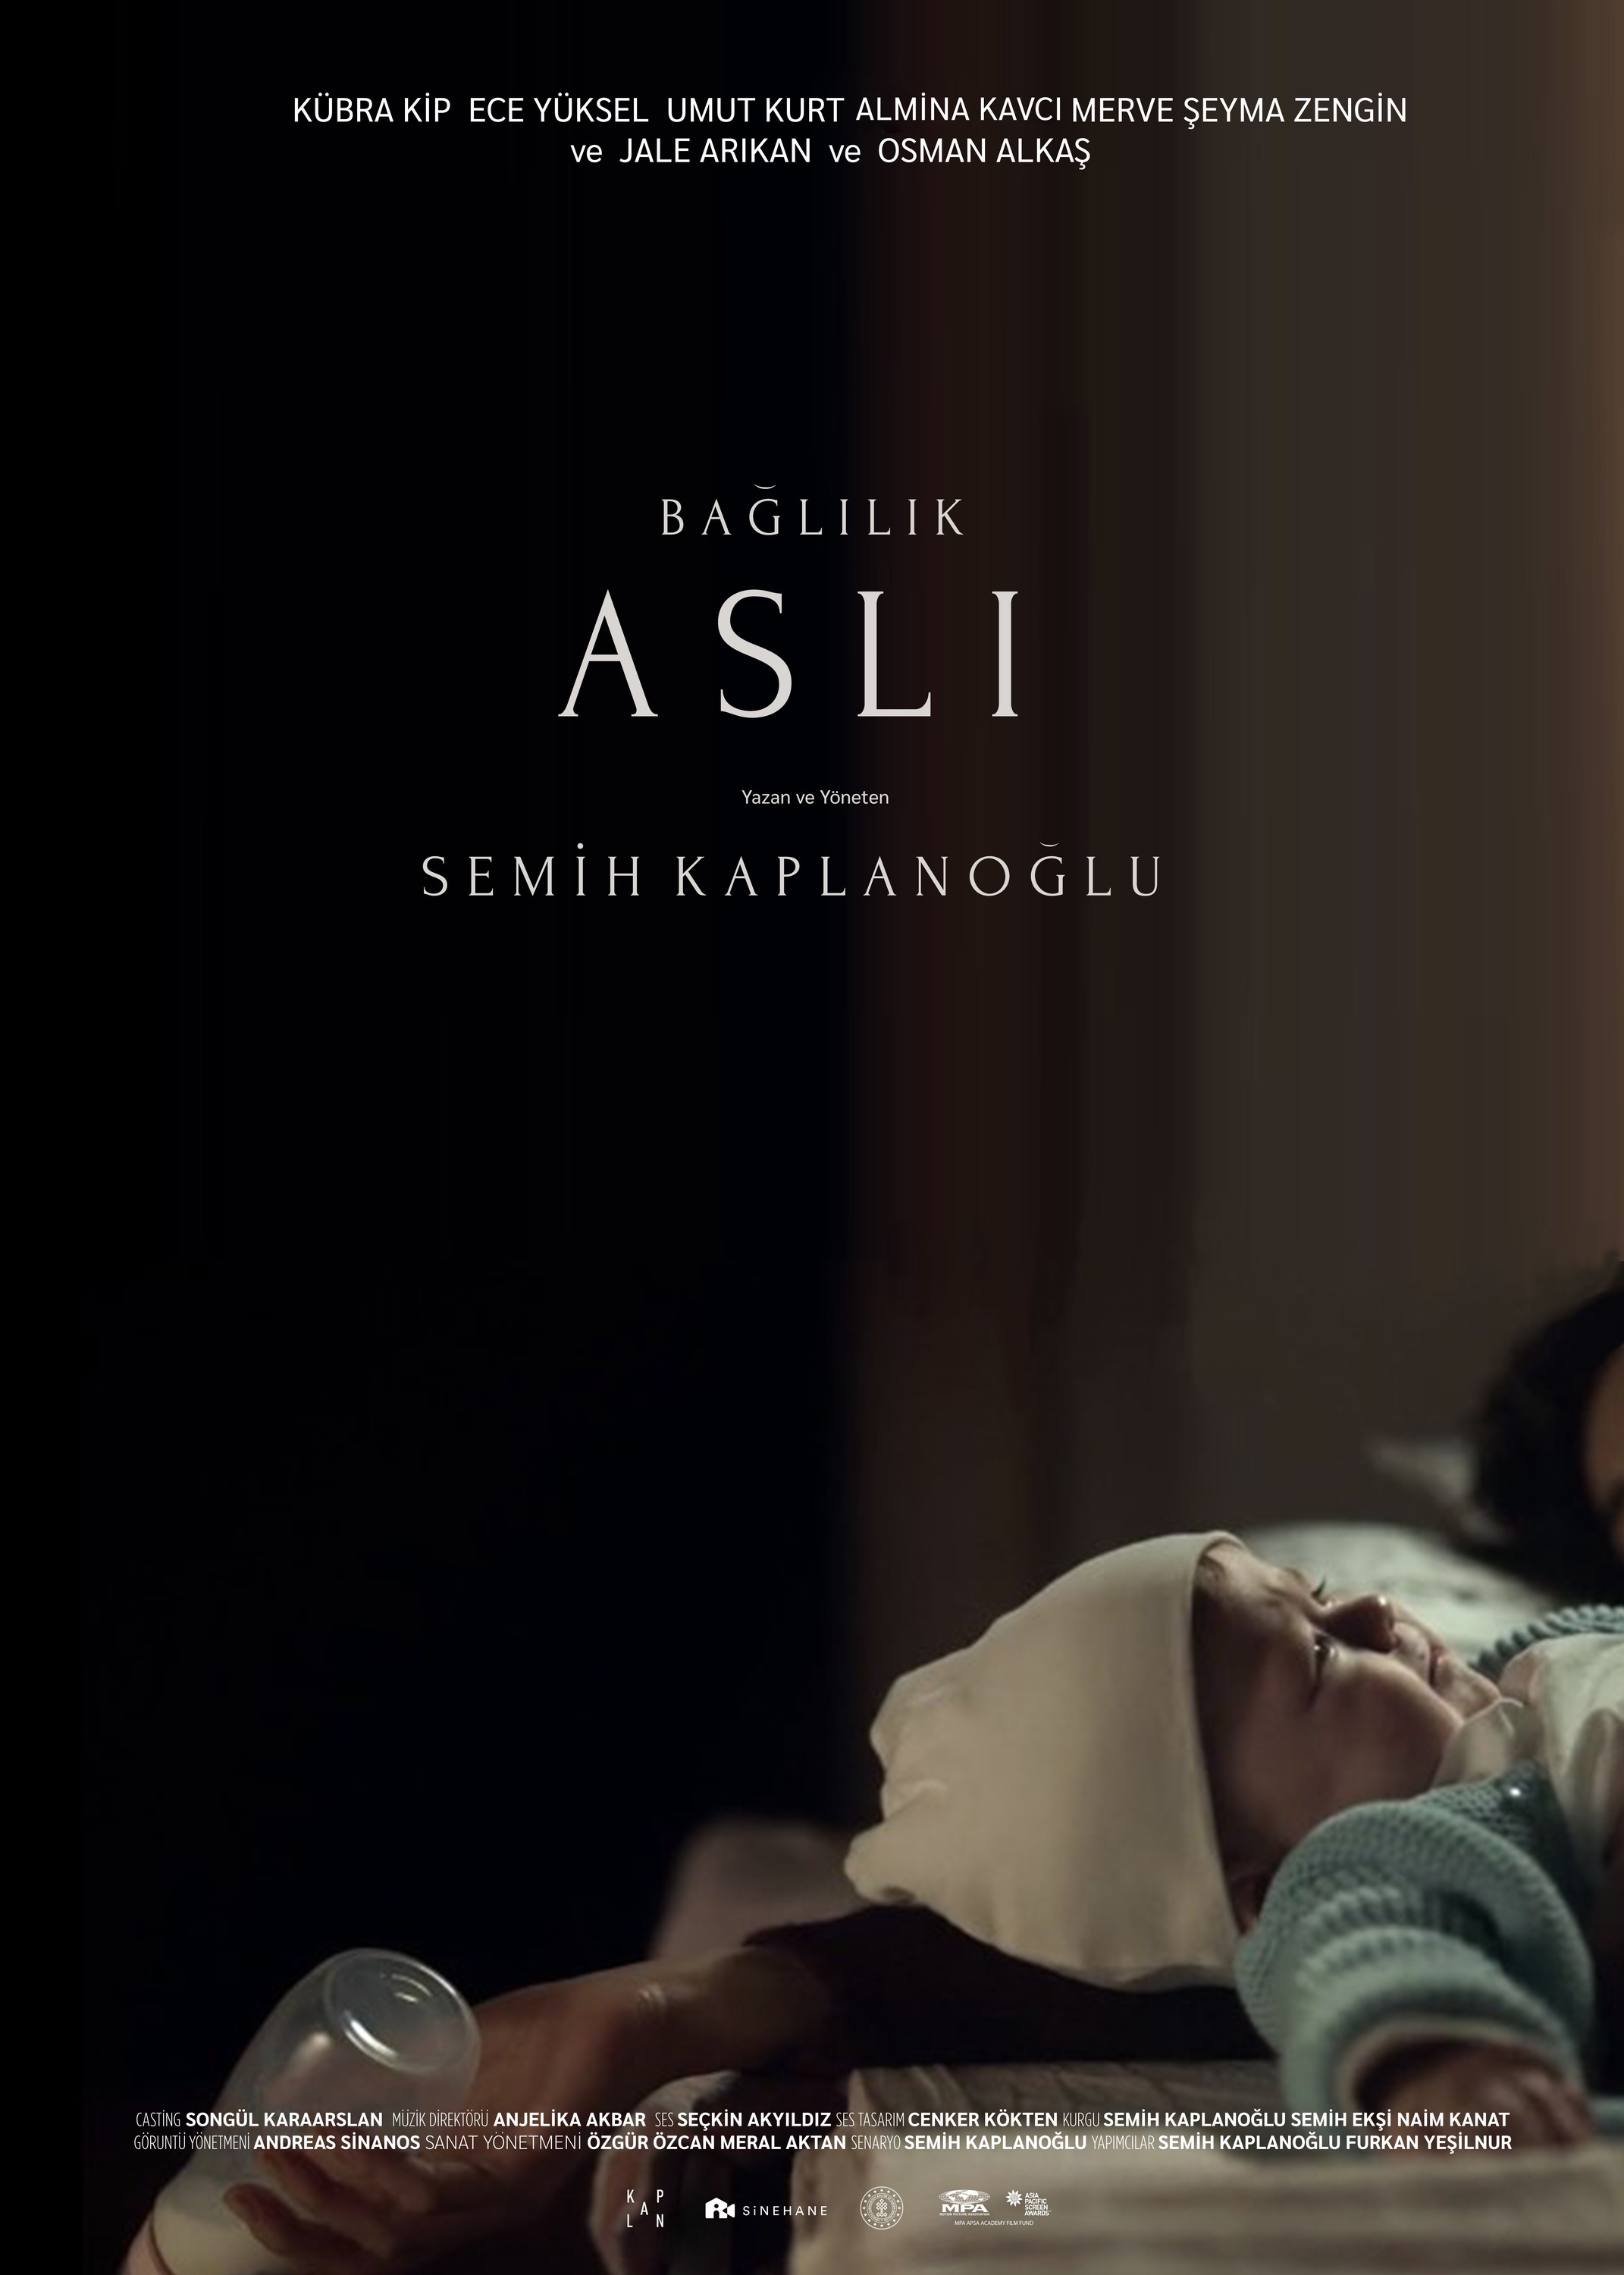 Mega Sized Movie Poster Image for Baglilik Asli 